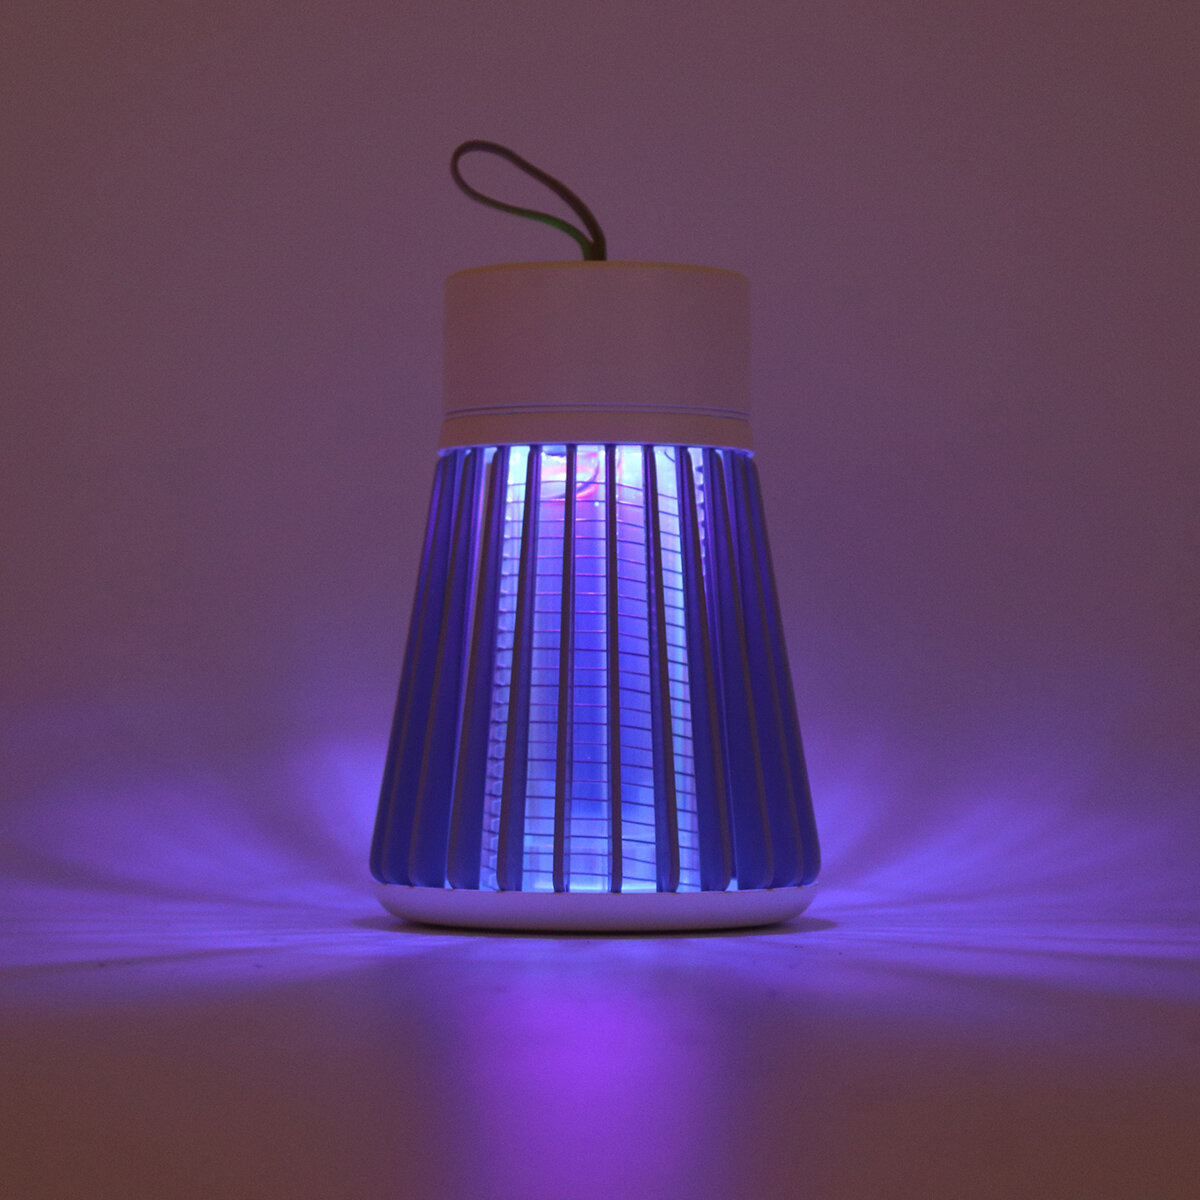 Oplaadbare insectenkiller lamp met laag geluidsniveau, fysieke muggenverdrijver.